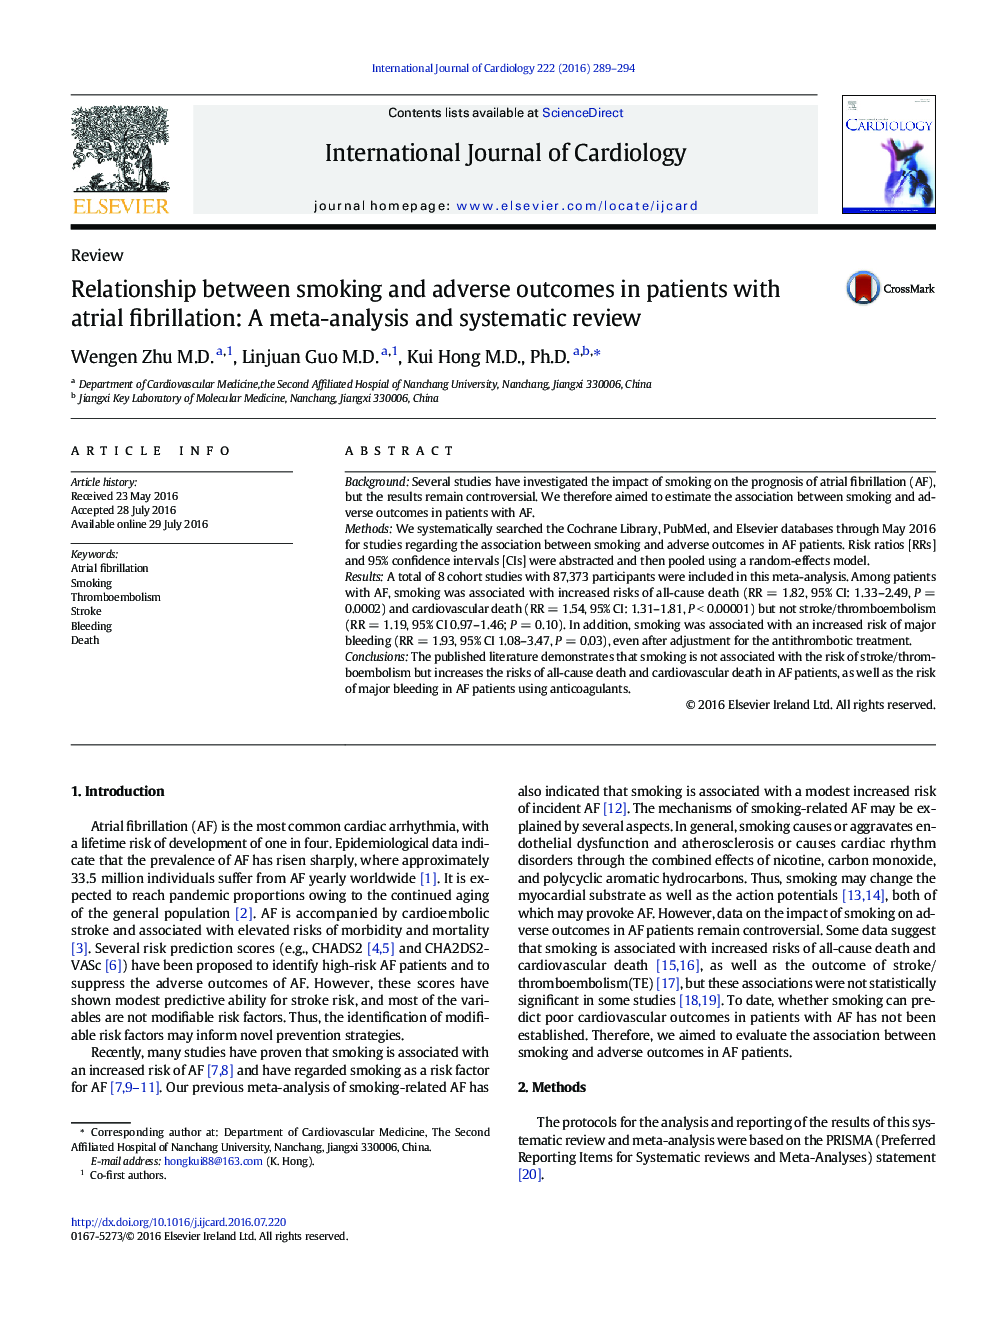 رابطه بین سیگار کشیدن و پیامدهای ناگوار در بیماران مبتلا به فیبریلاسیون دهلیزی: یک متاآنالیز و بررسی سیستماتیک 